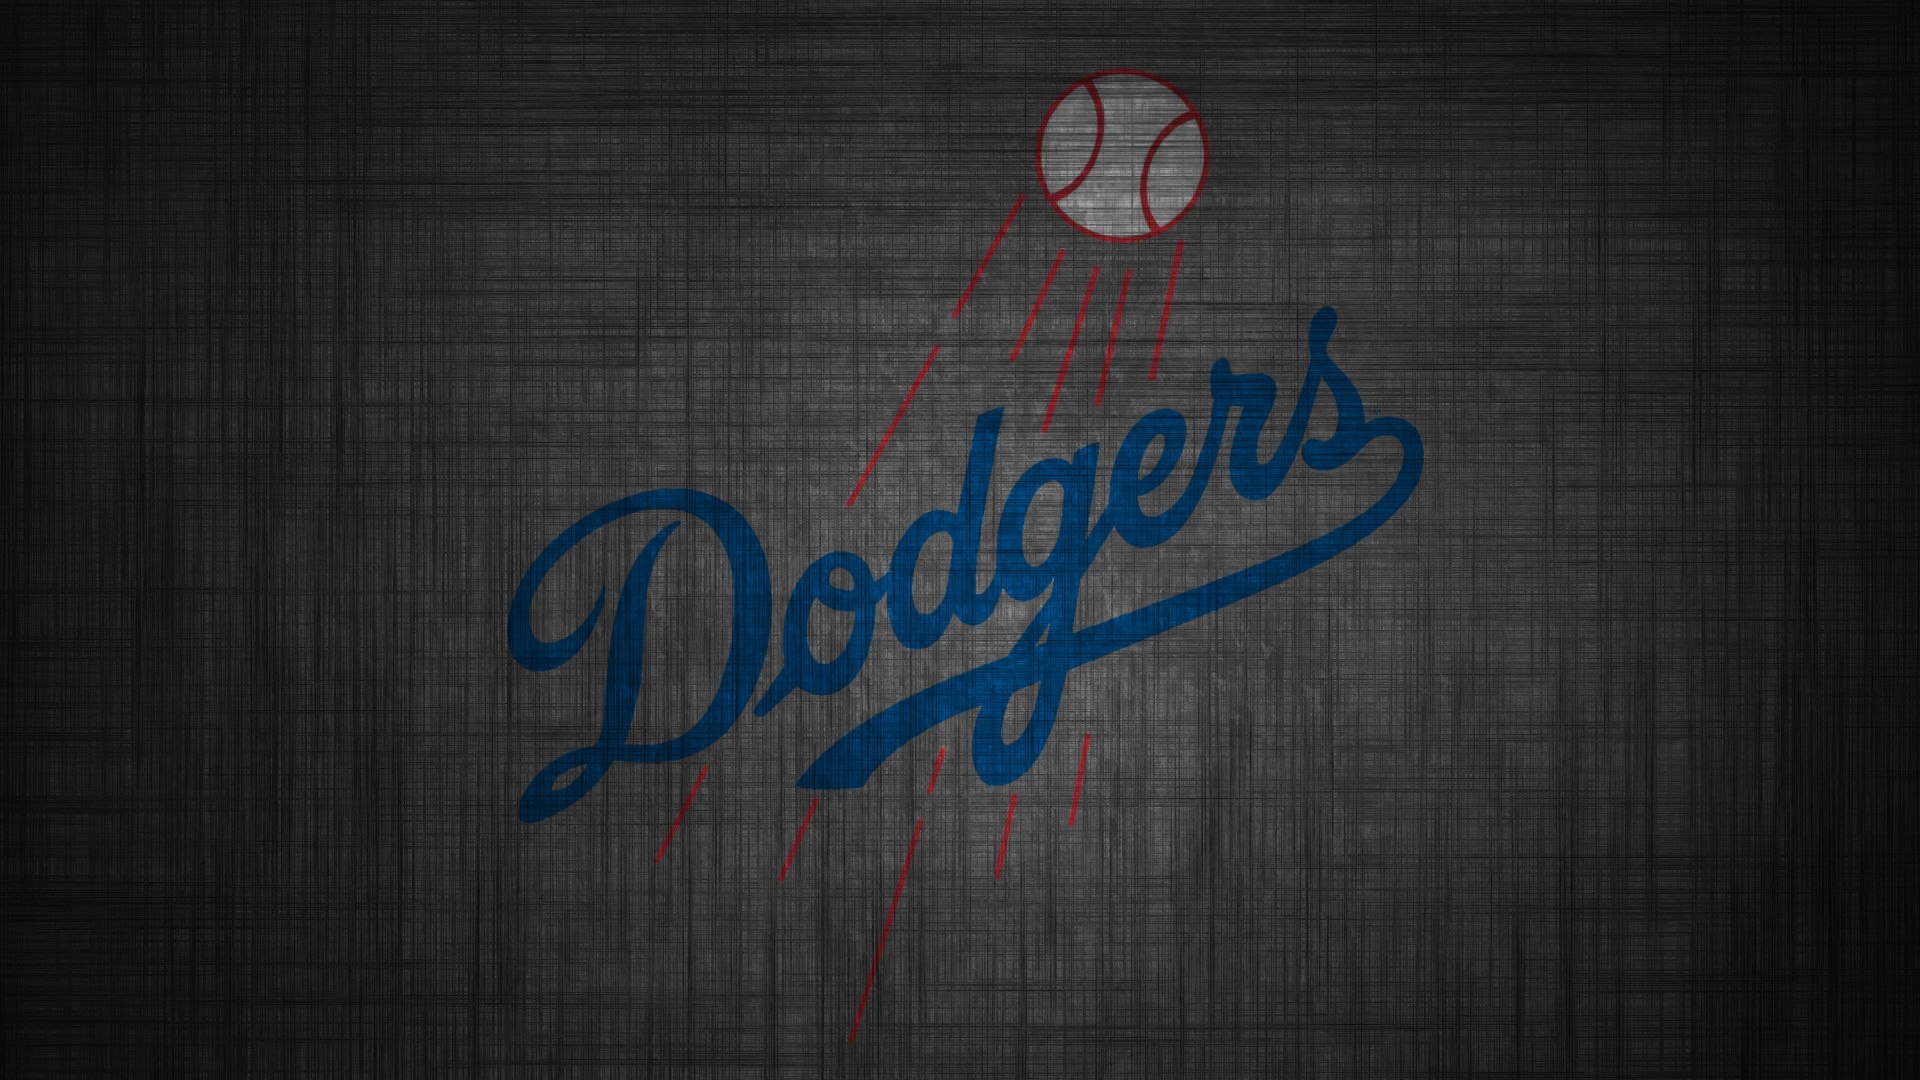 74+] Los Angeles Dodgers Wallpaper - WallpaperSafari